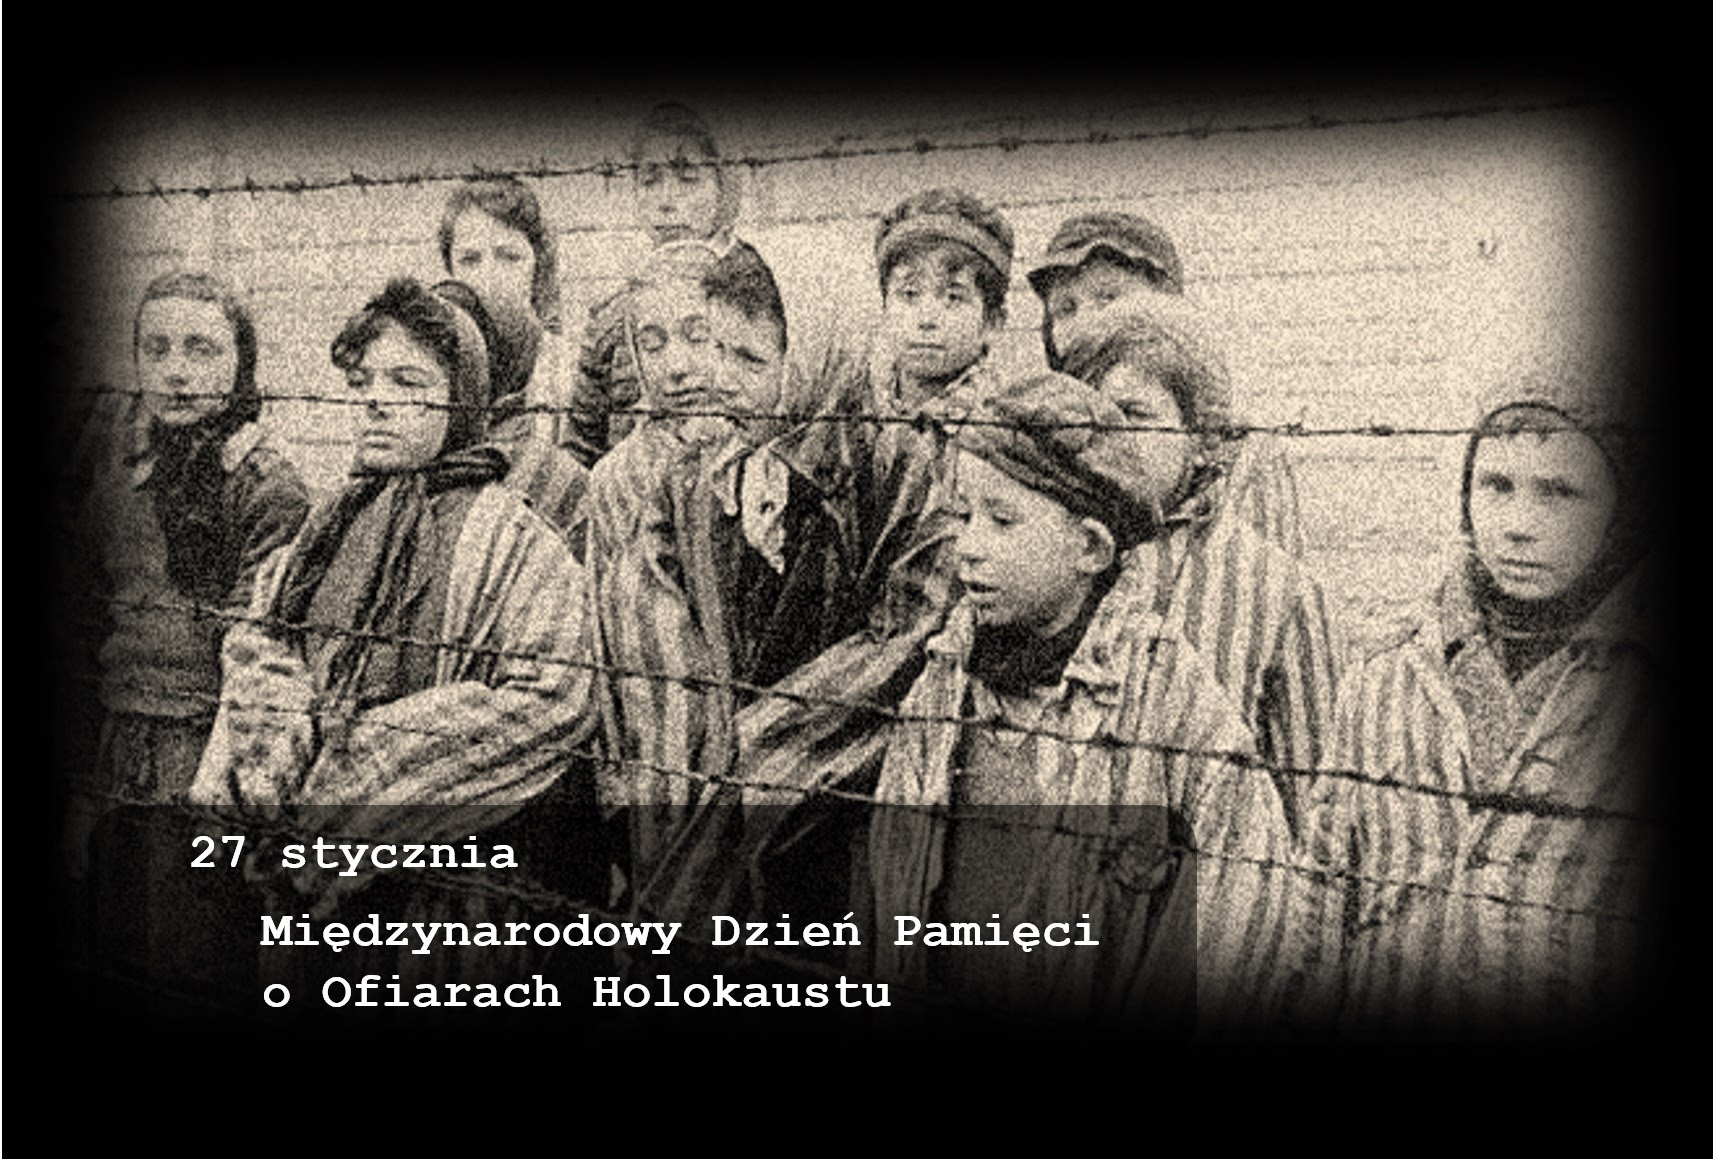 27 stycznia, Międzynarodowy Dzień Pamięci o Ofiarach Holokaustu